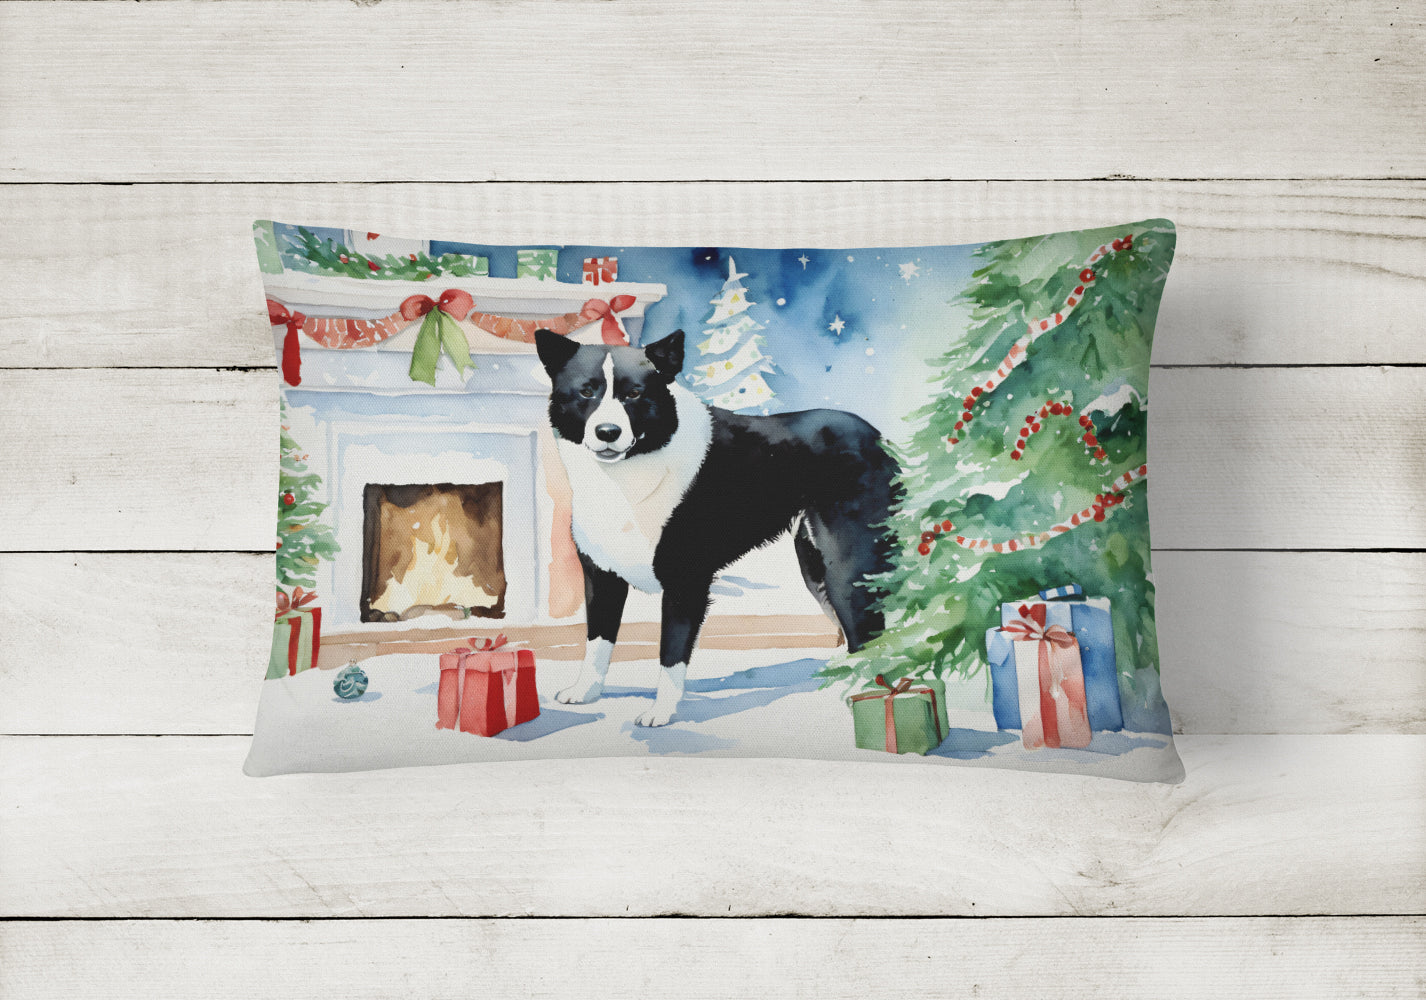 Buy this Karelian Bear Dog Cozy Christmas Throw Pillow